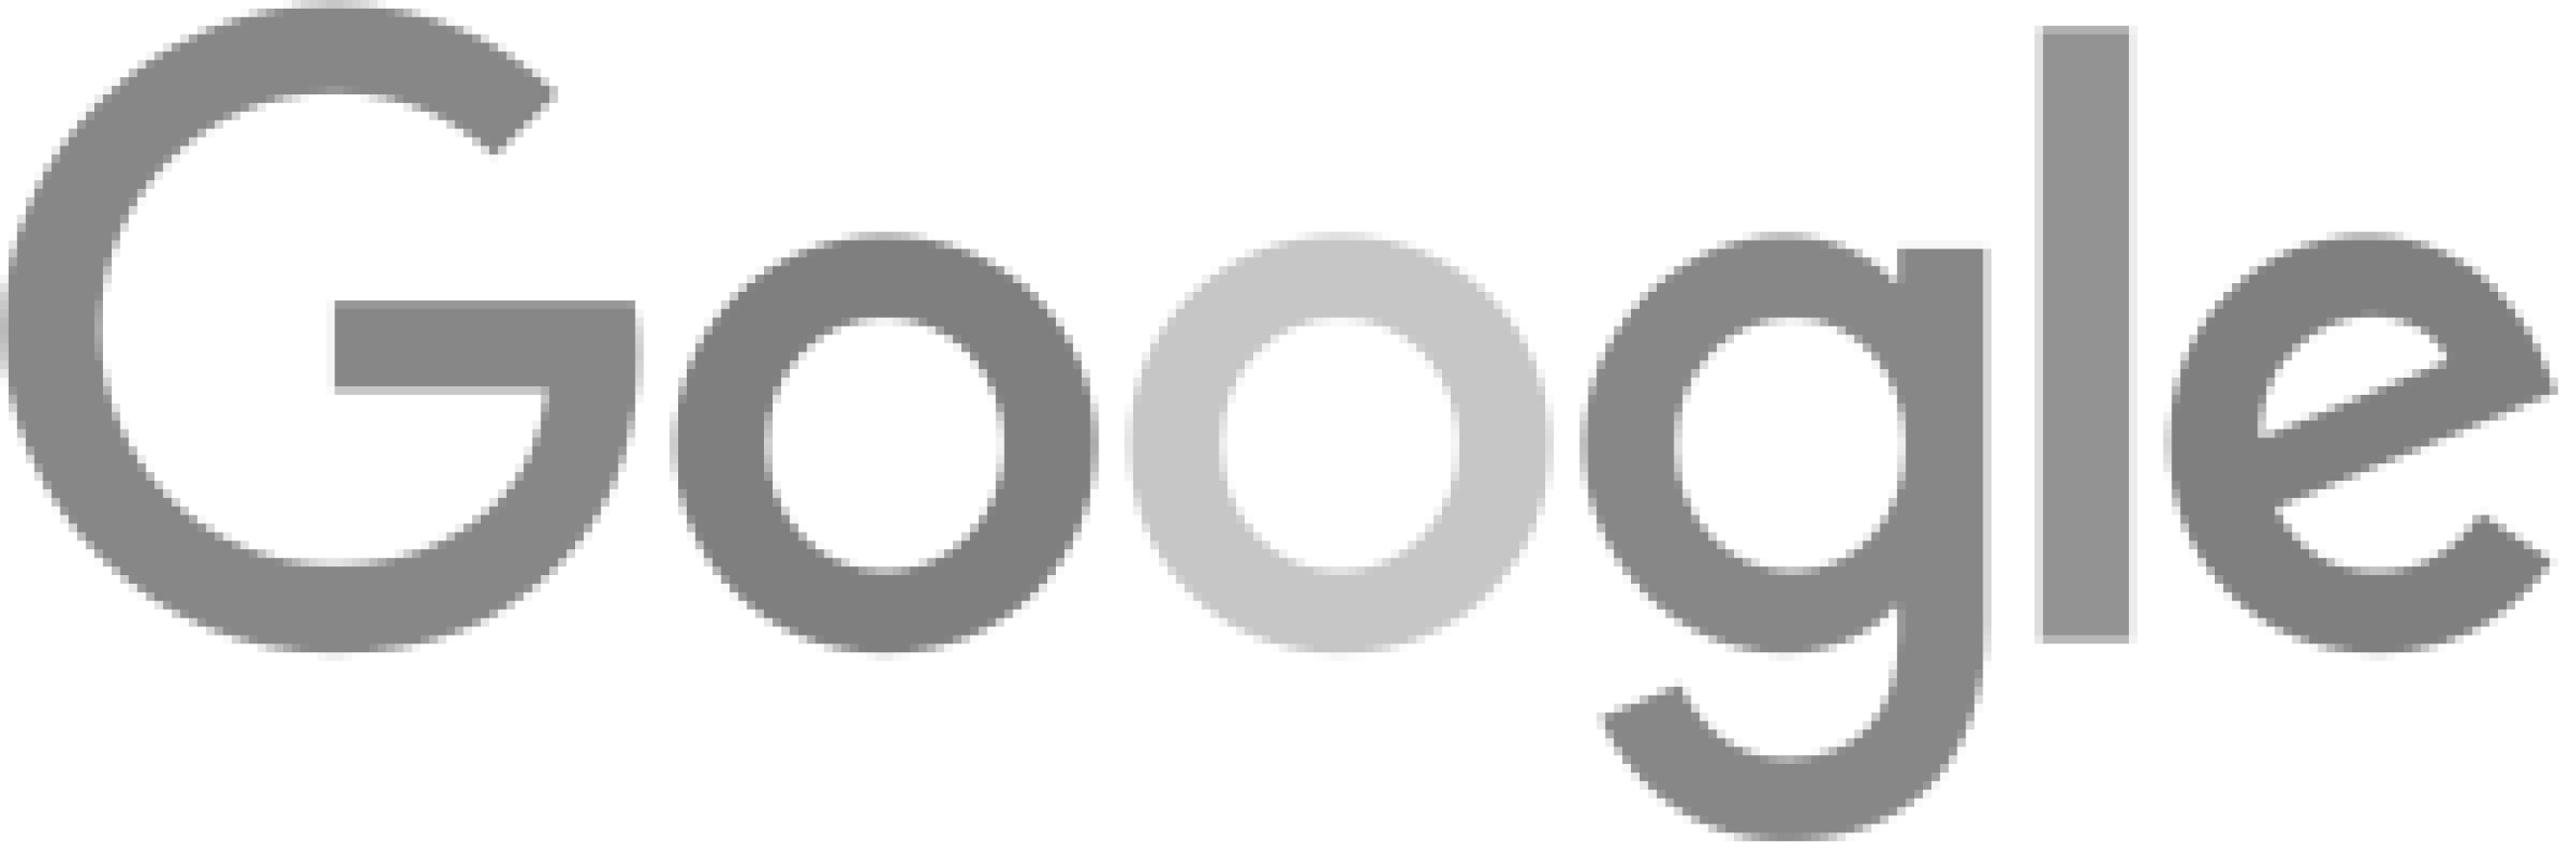 Google_2015_logo-testimonial 1-image